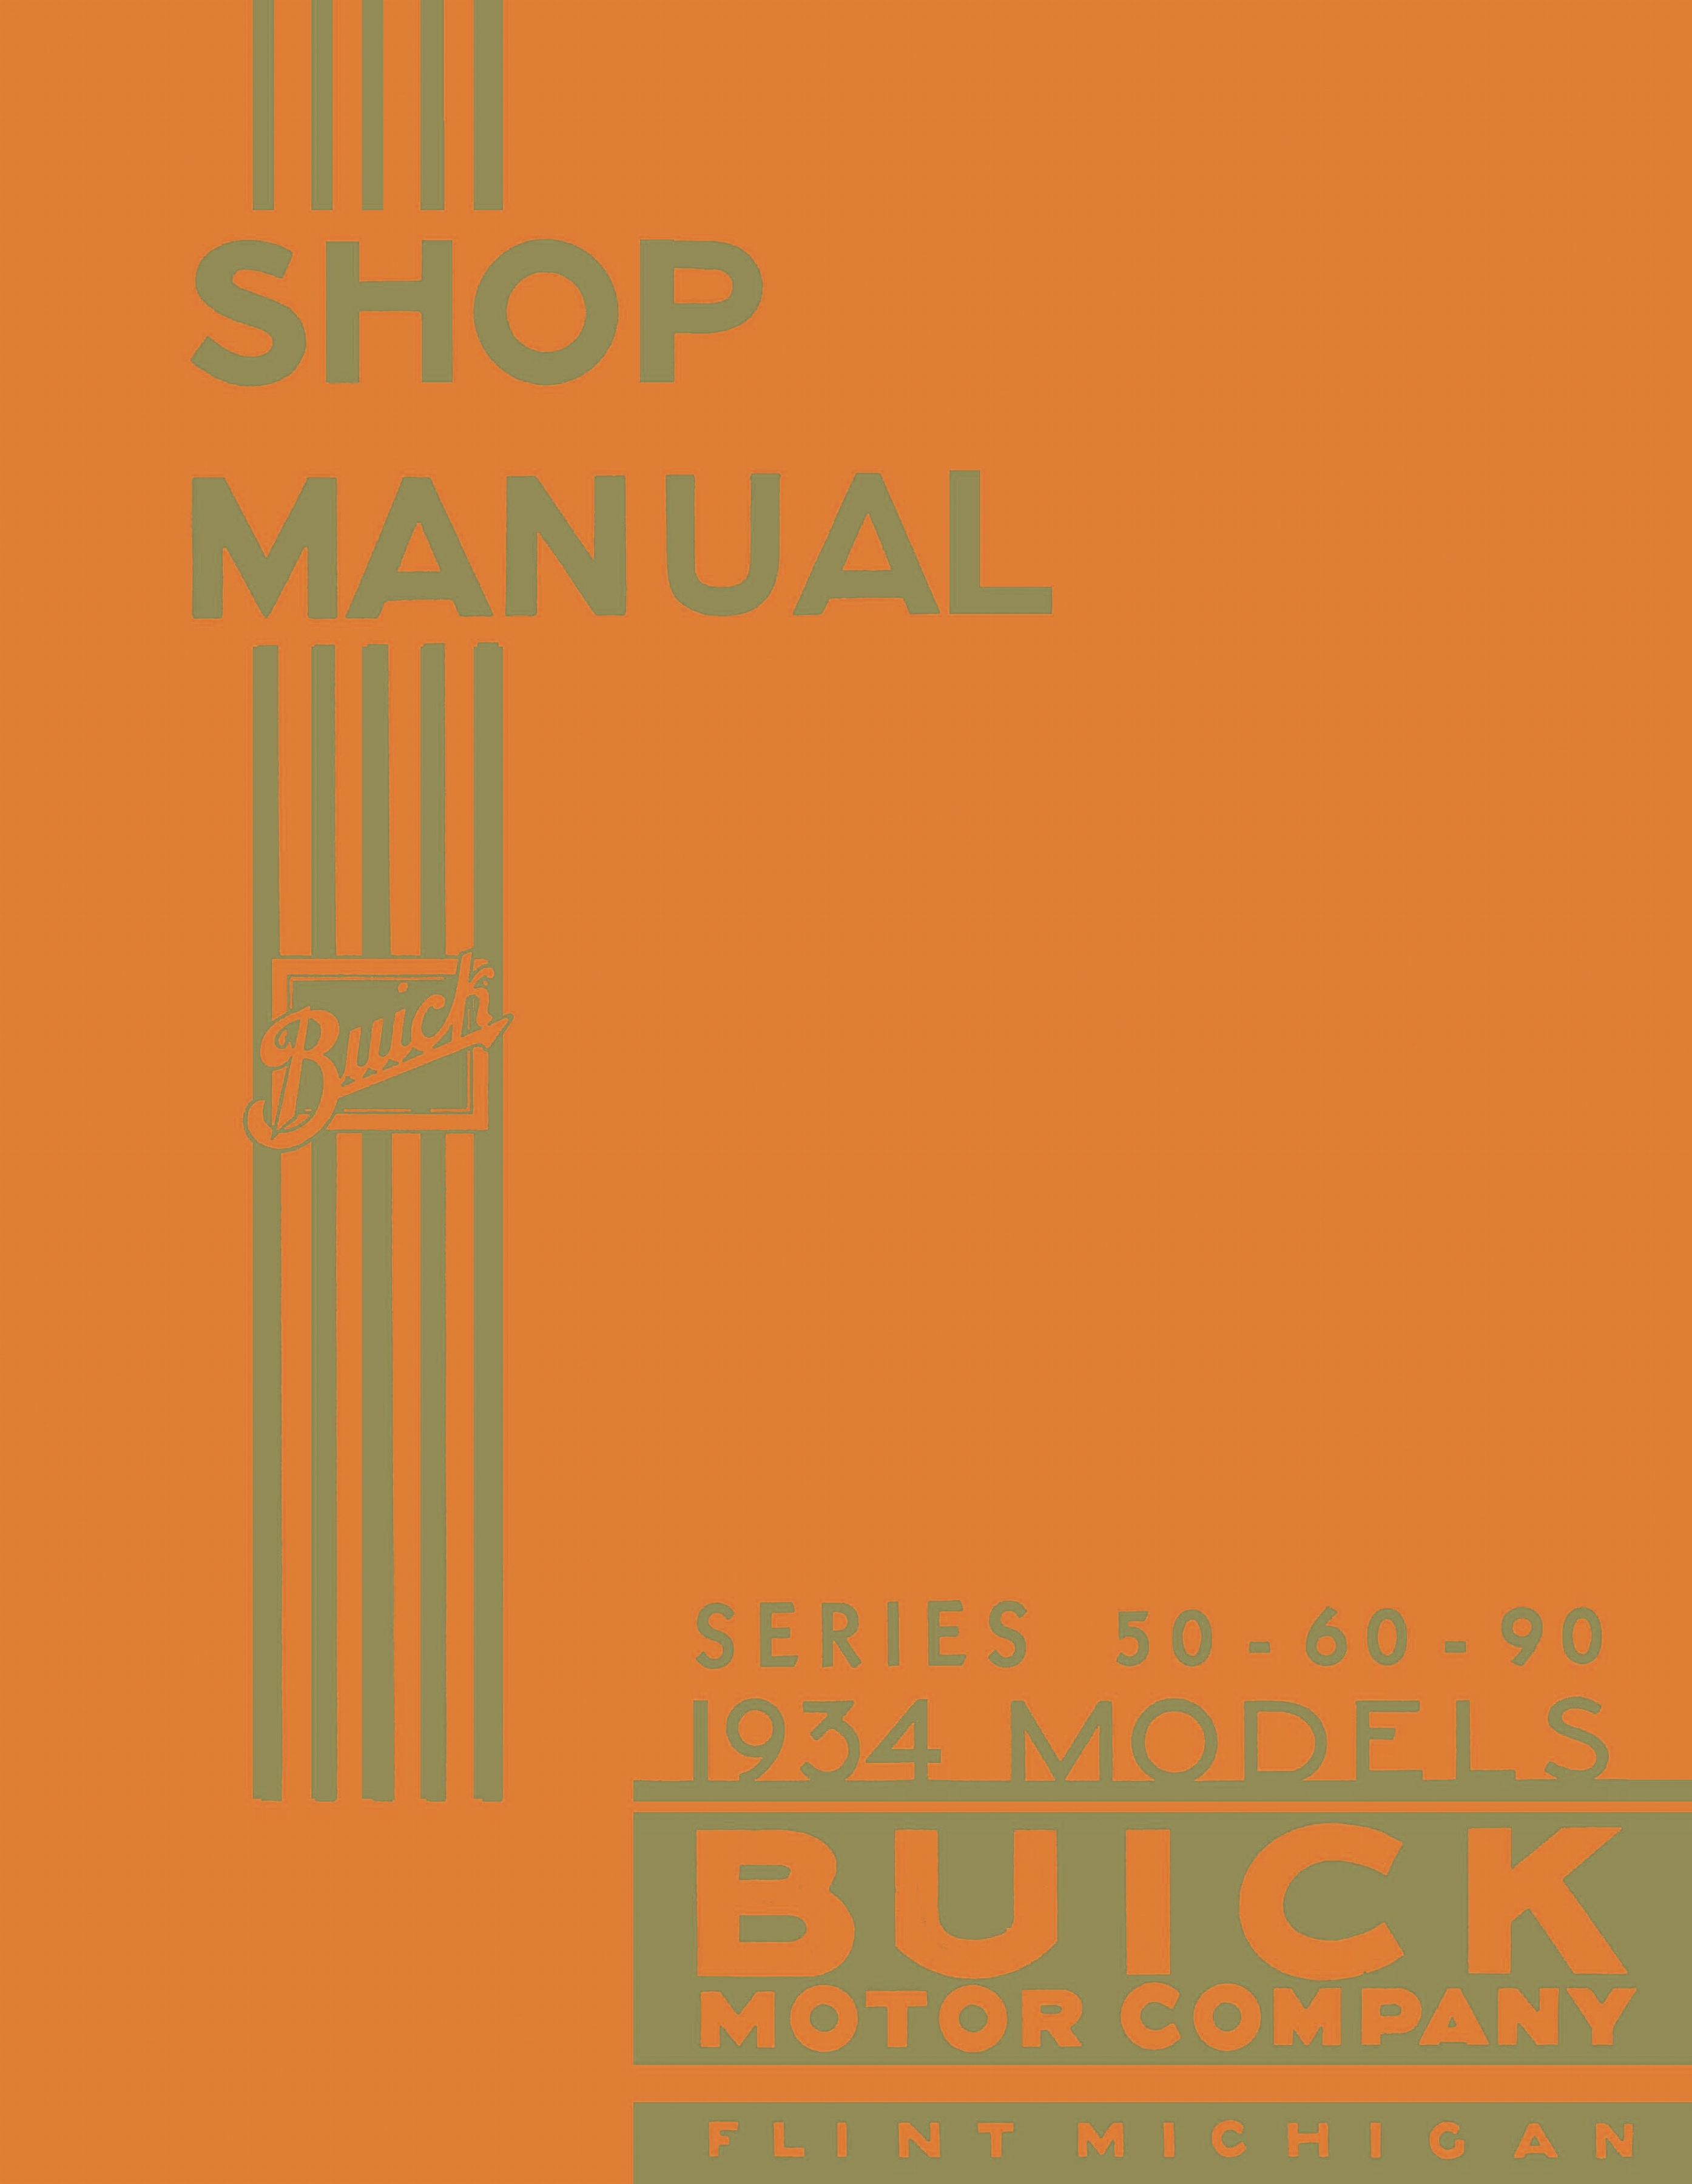 n_1934 Buick Series 50-60-90 Shop Manual_Page_001.jpg